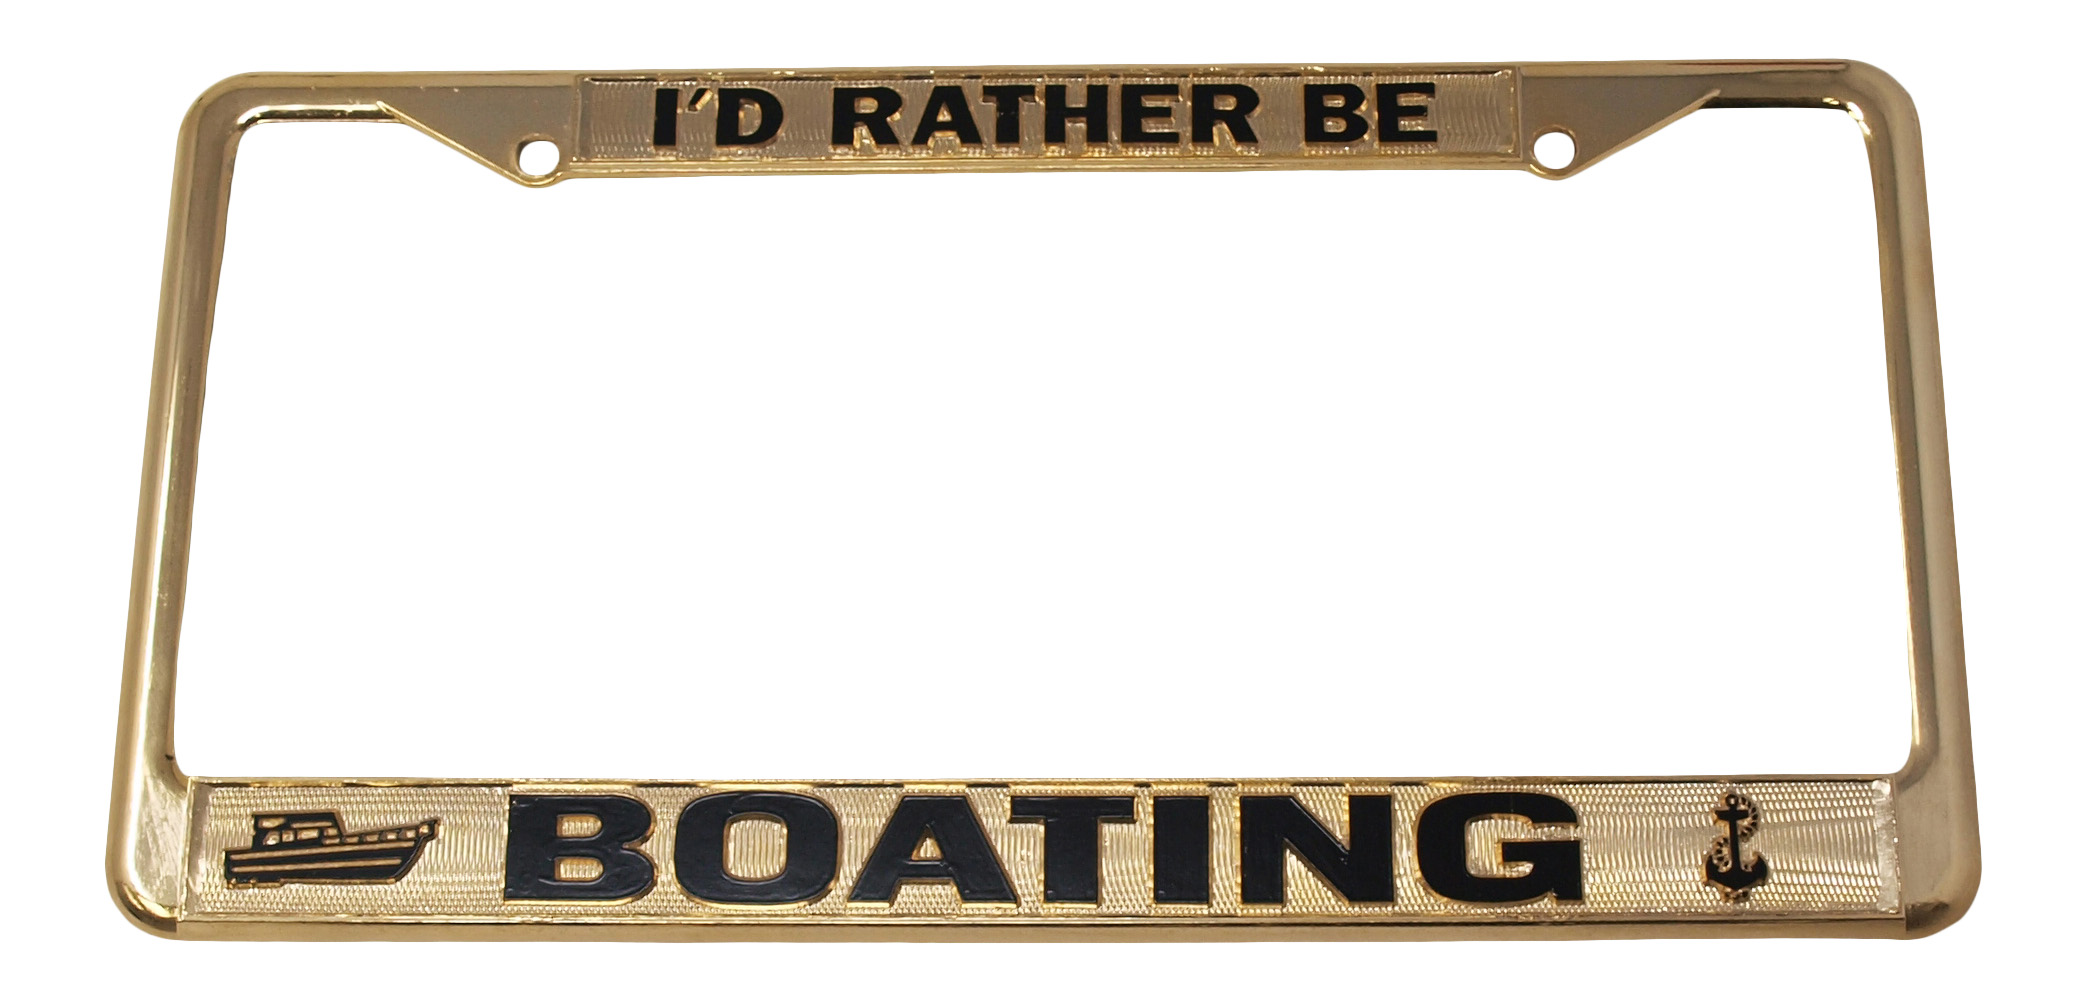 I'd Rather Be Boating License Plate Frame, Gold